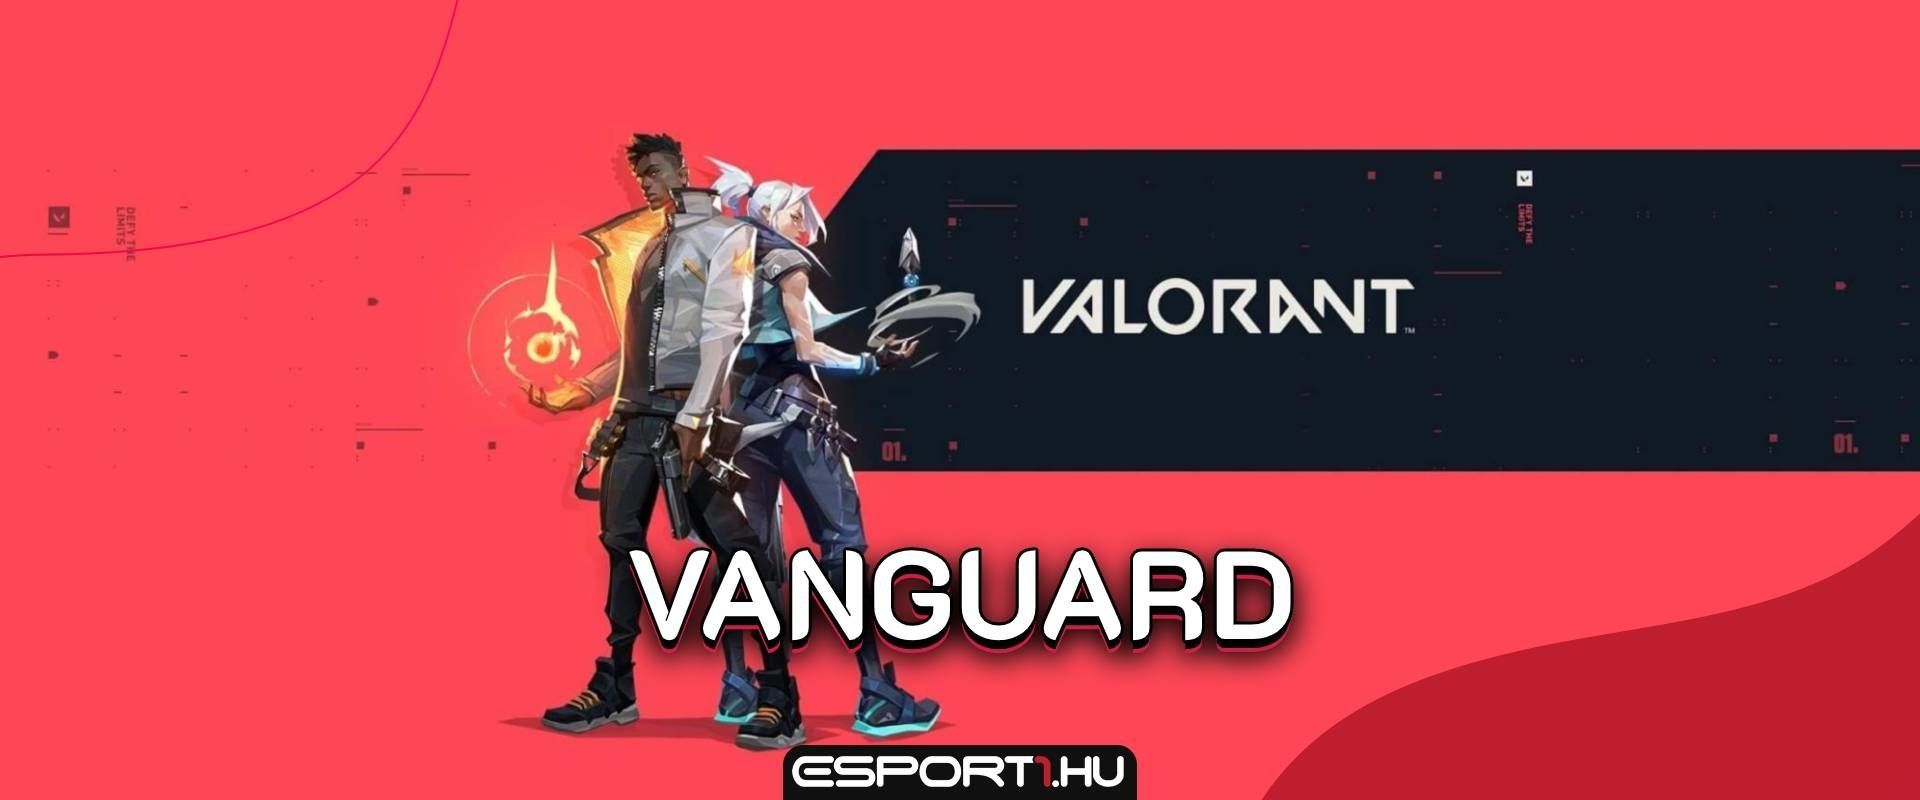 Tovább finomodik a Vanguard, kevésbé invazív megoldással készül a Riot